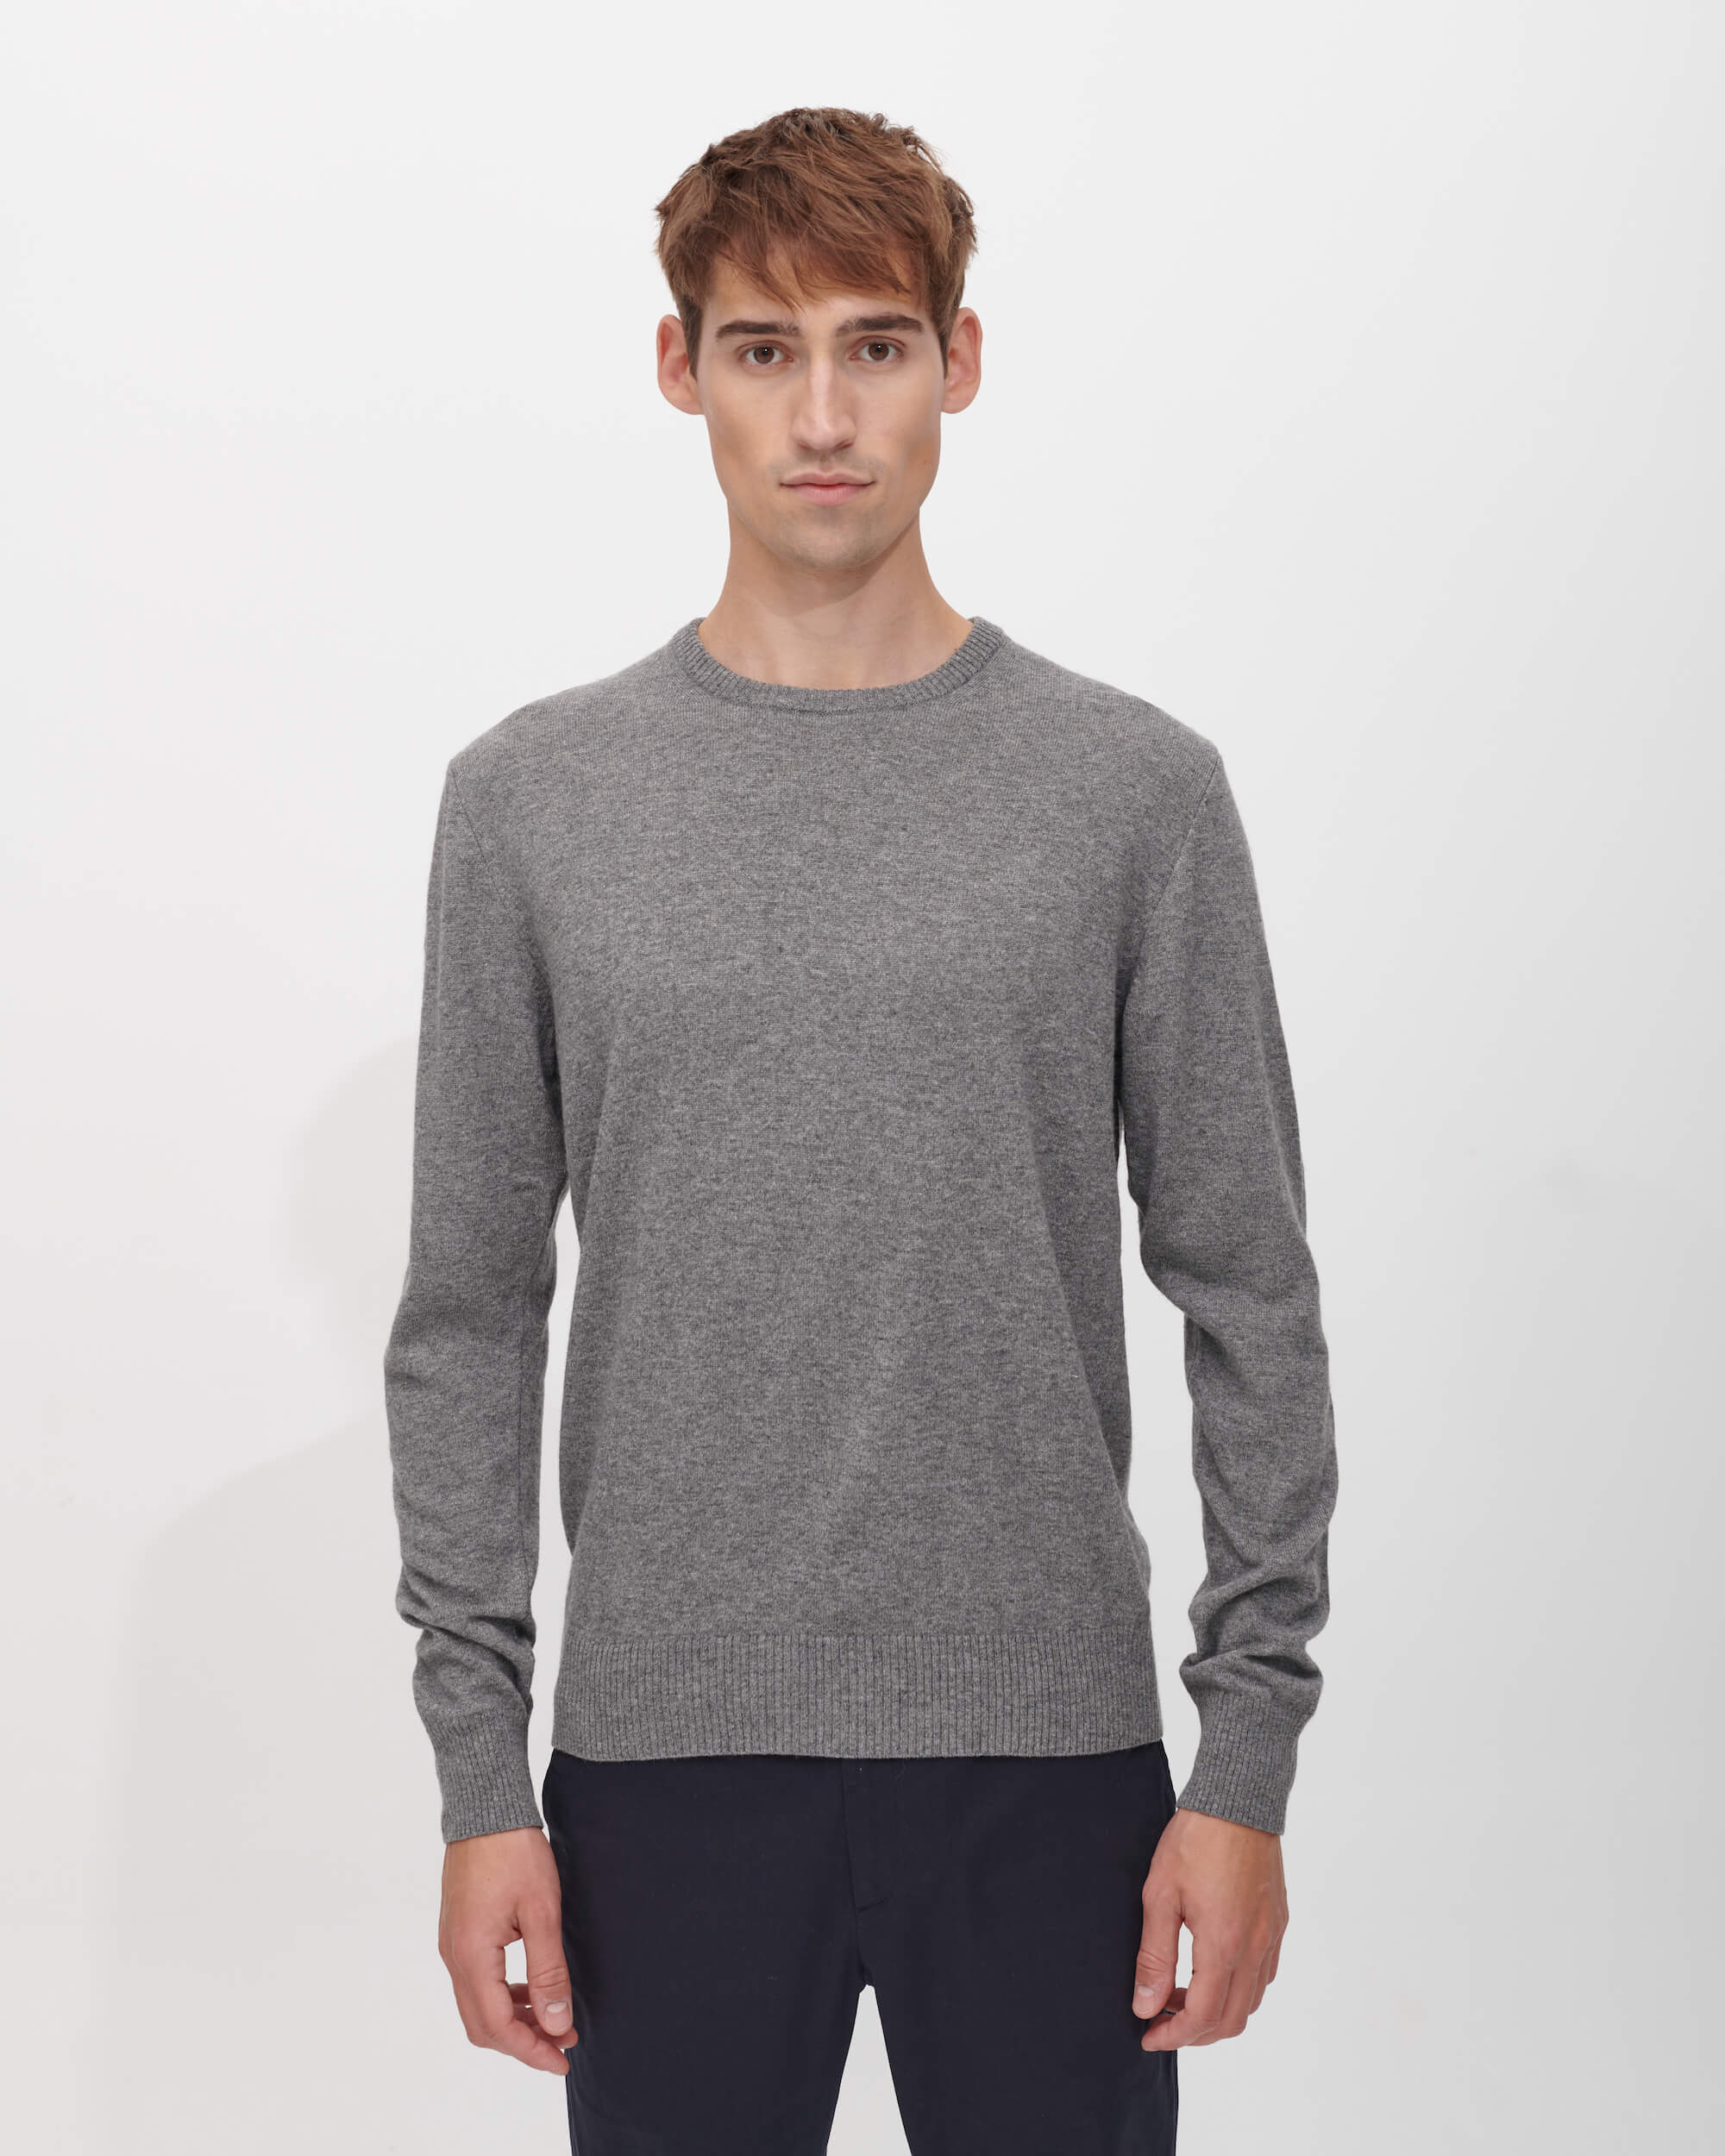 The Wool Sweater in Grey Melange | Cashmere-Blend Jumper for Men